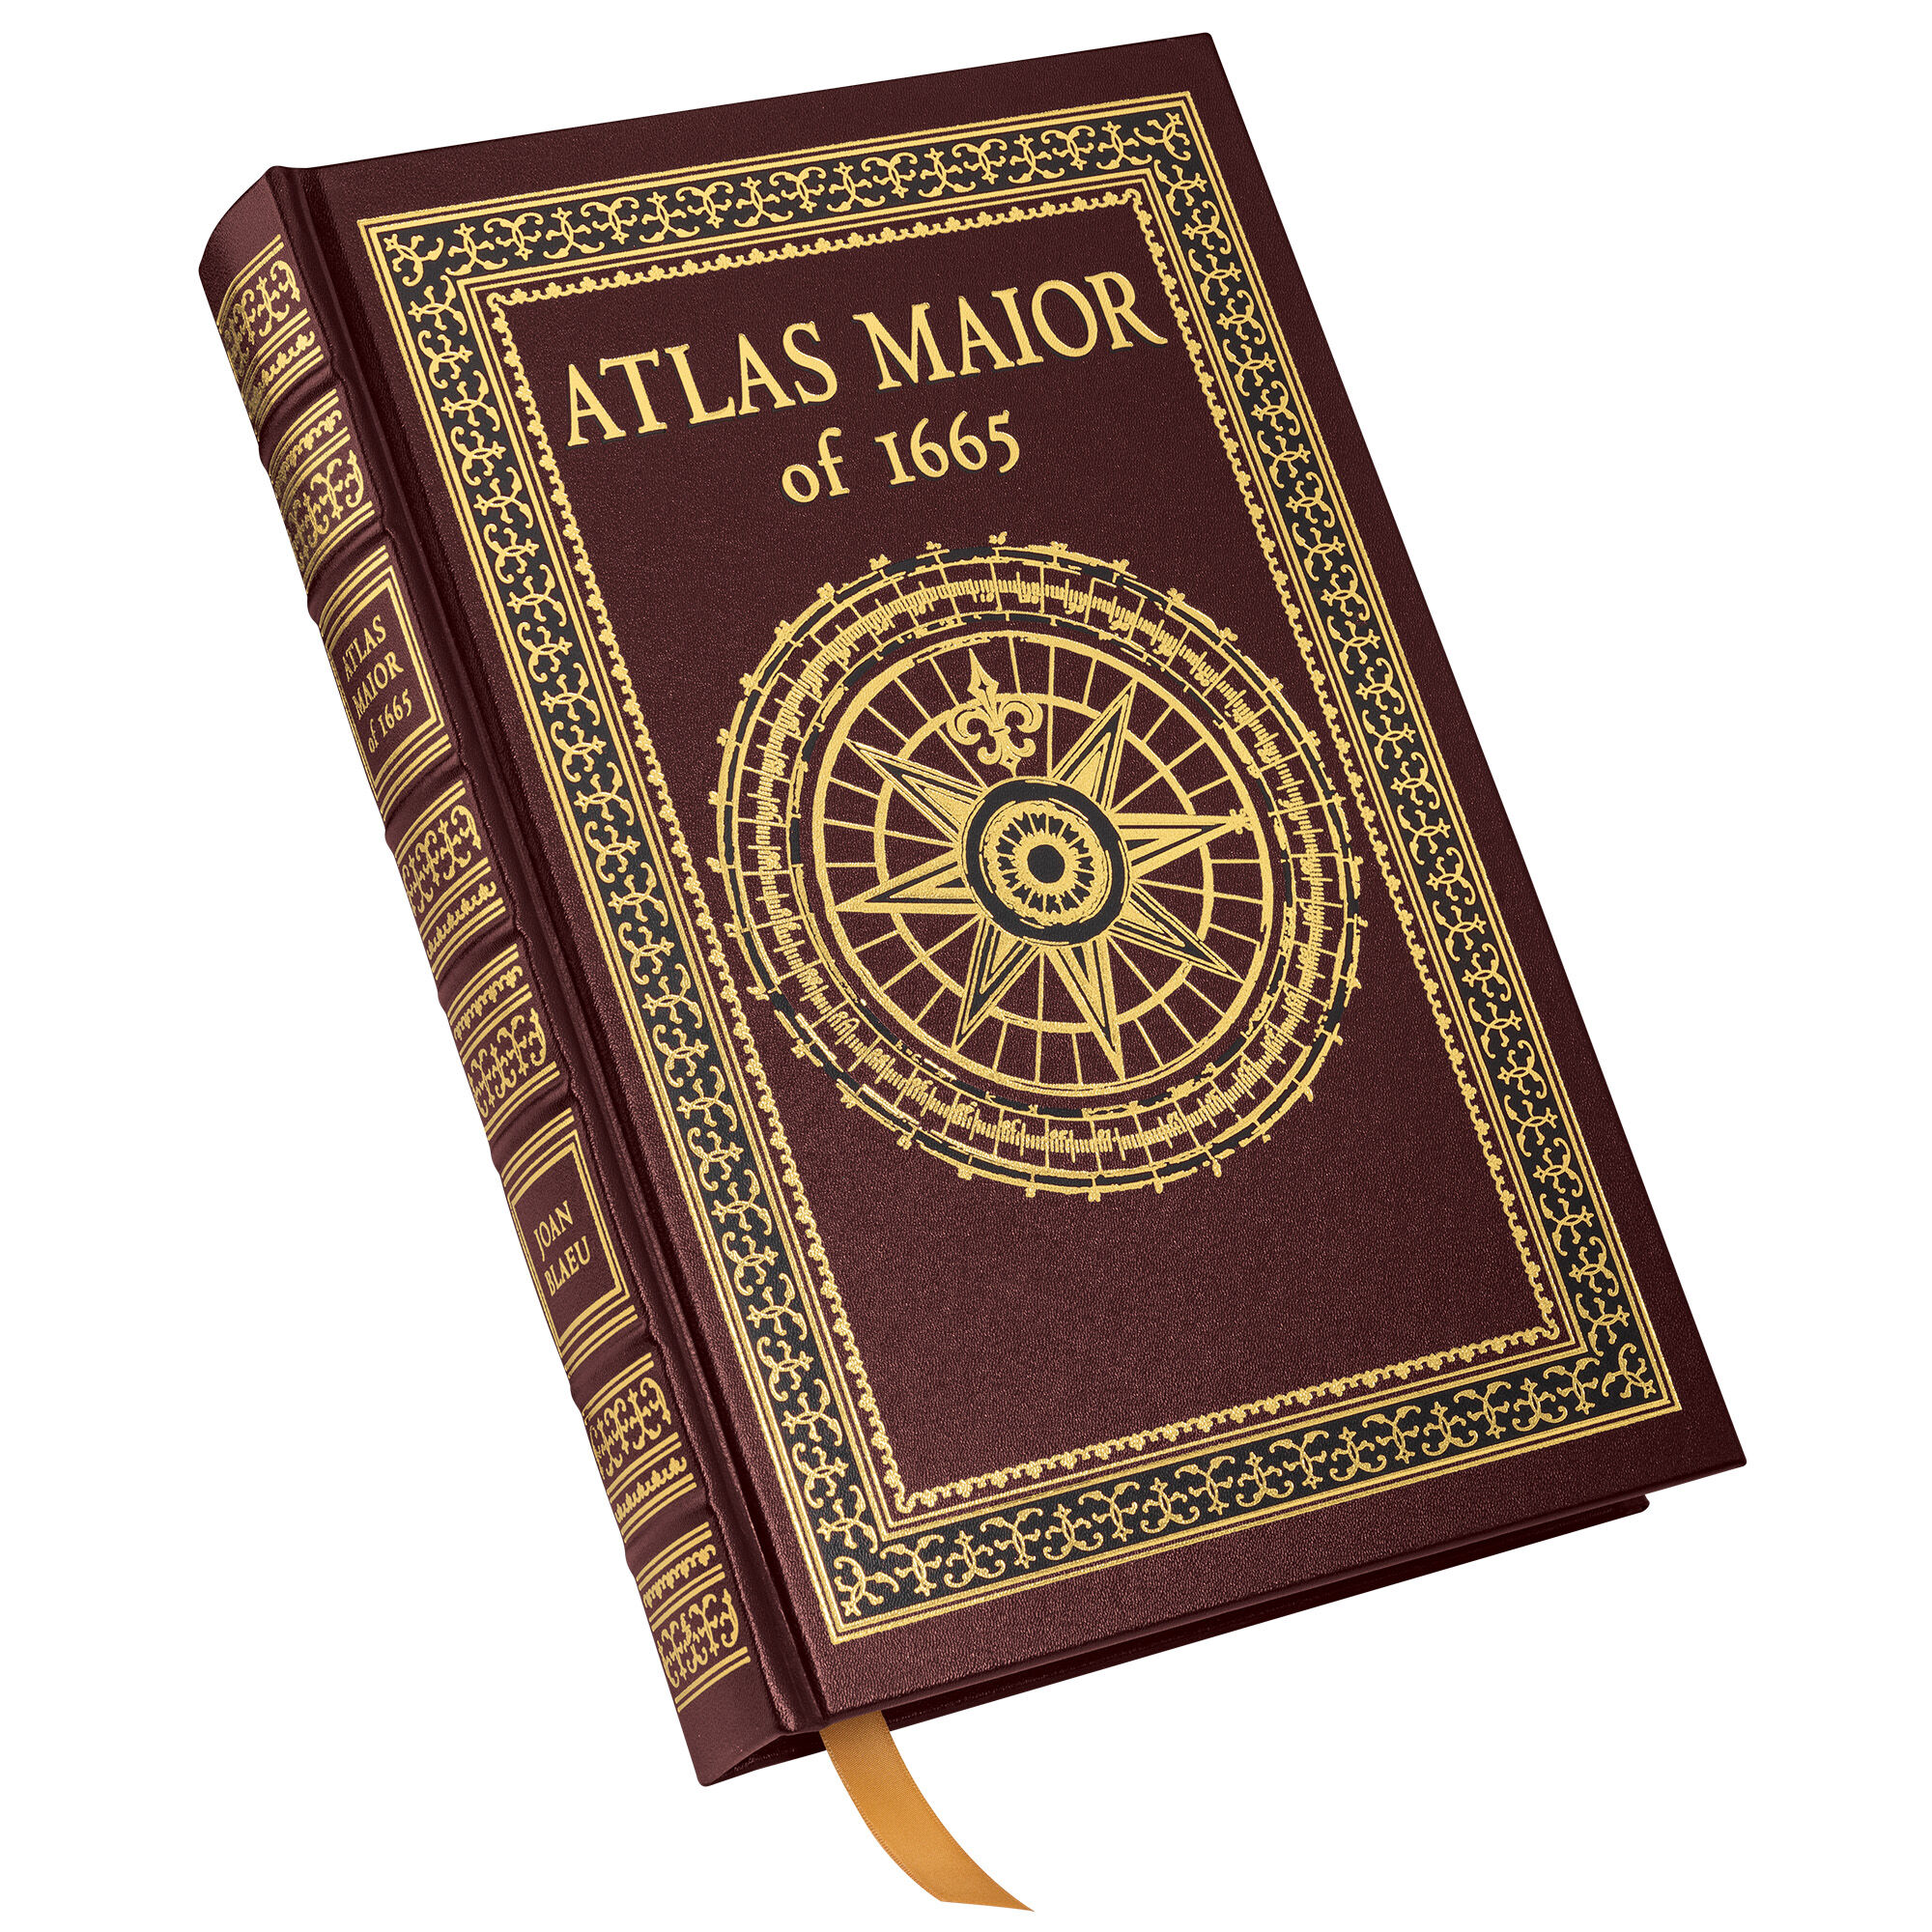 Atlas Maior 3485 a cvr